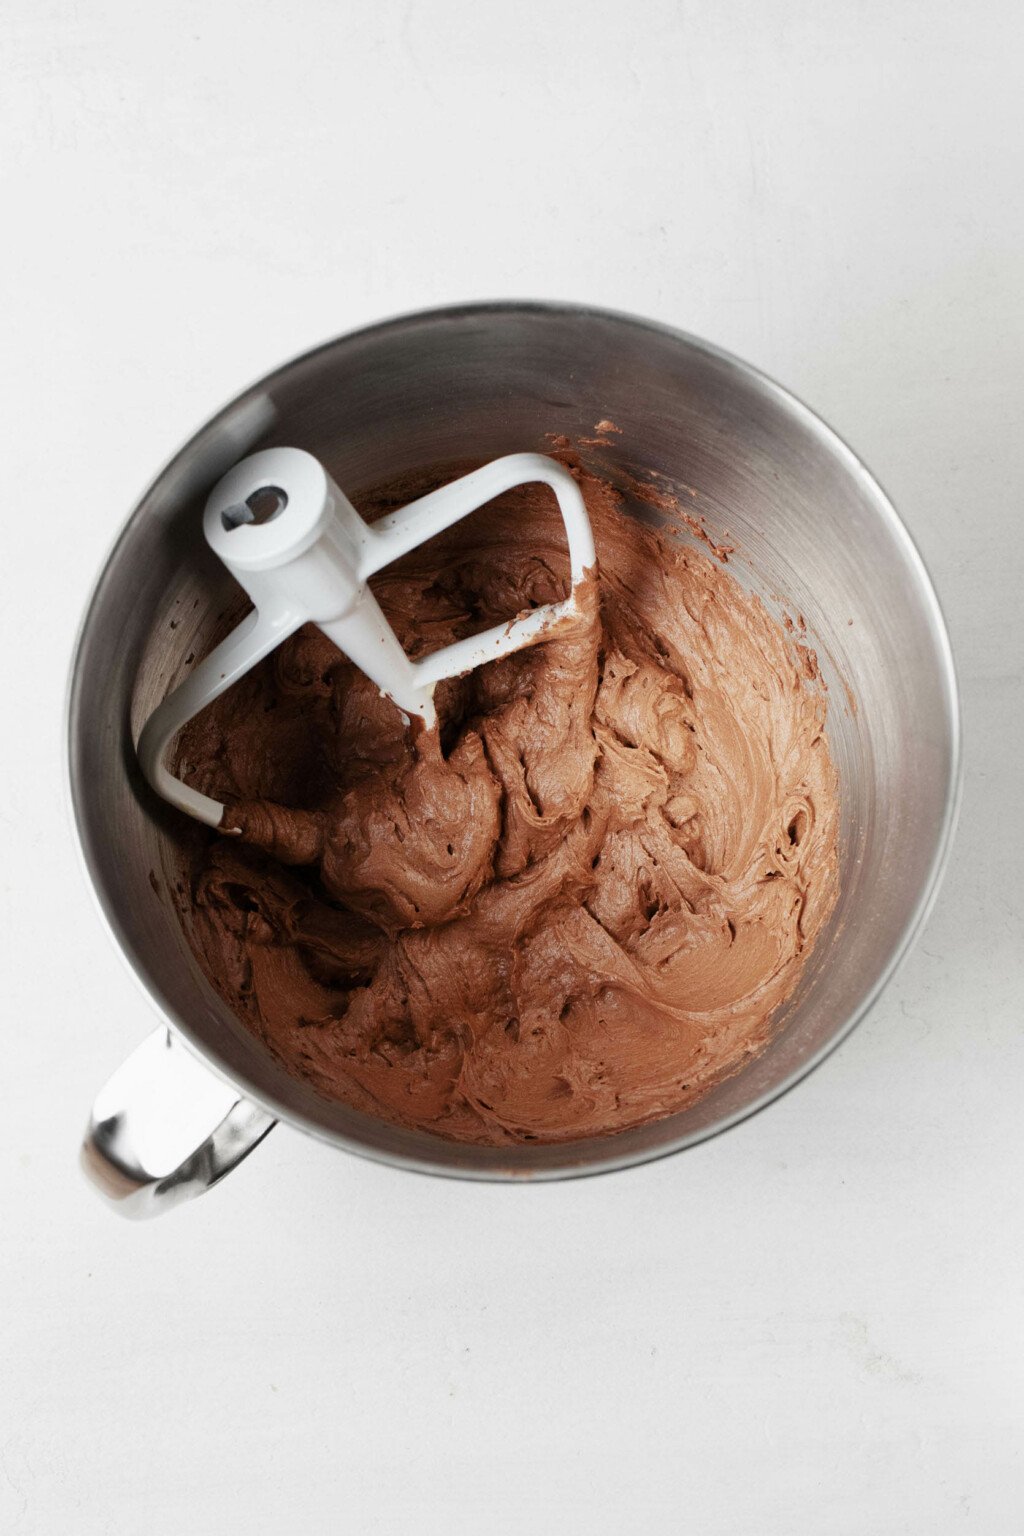 Το ασημένιο μπολ ενός μίξερ μόλις χρησιμοποιήθηκε για την προετοιμασία του vegan frosting σοκολάτας.  Το λευκό εξάρτημα κουπιών στηρίζεται στο μπολ.